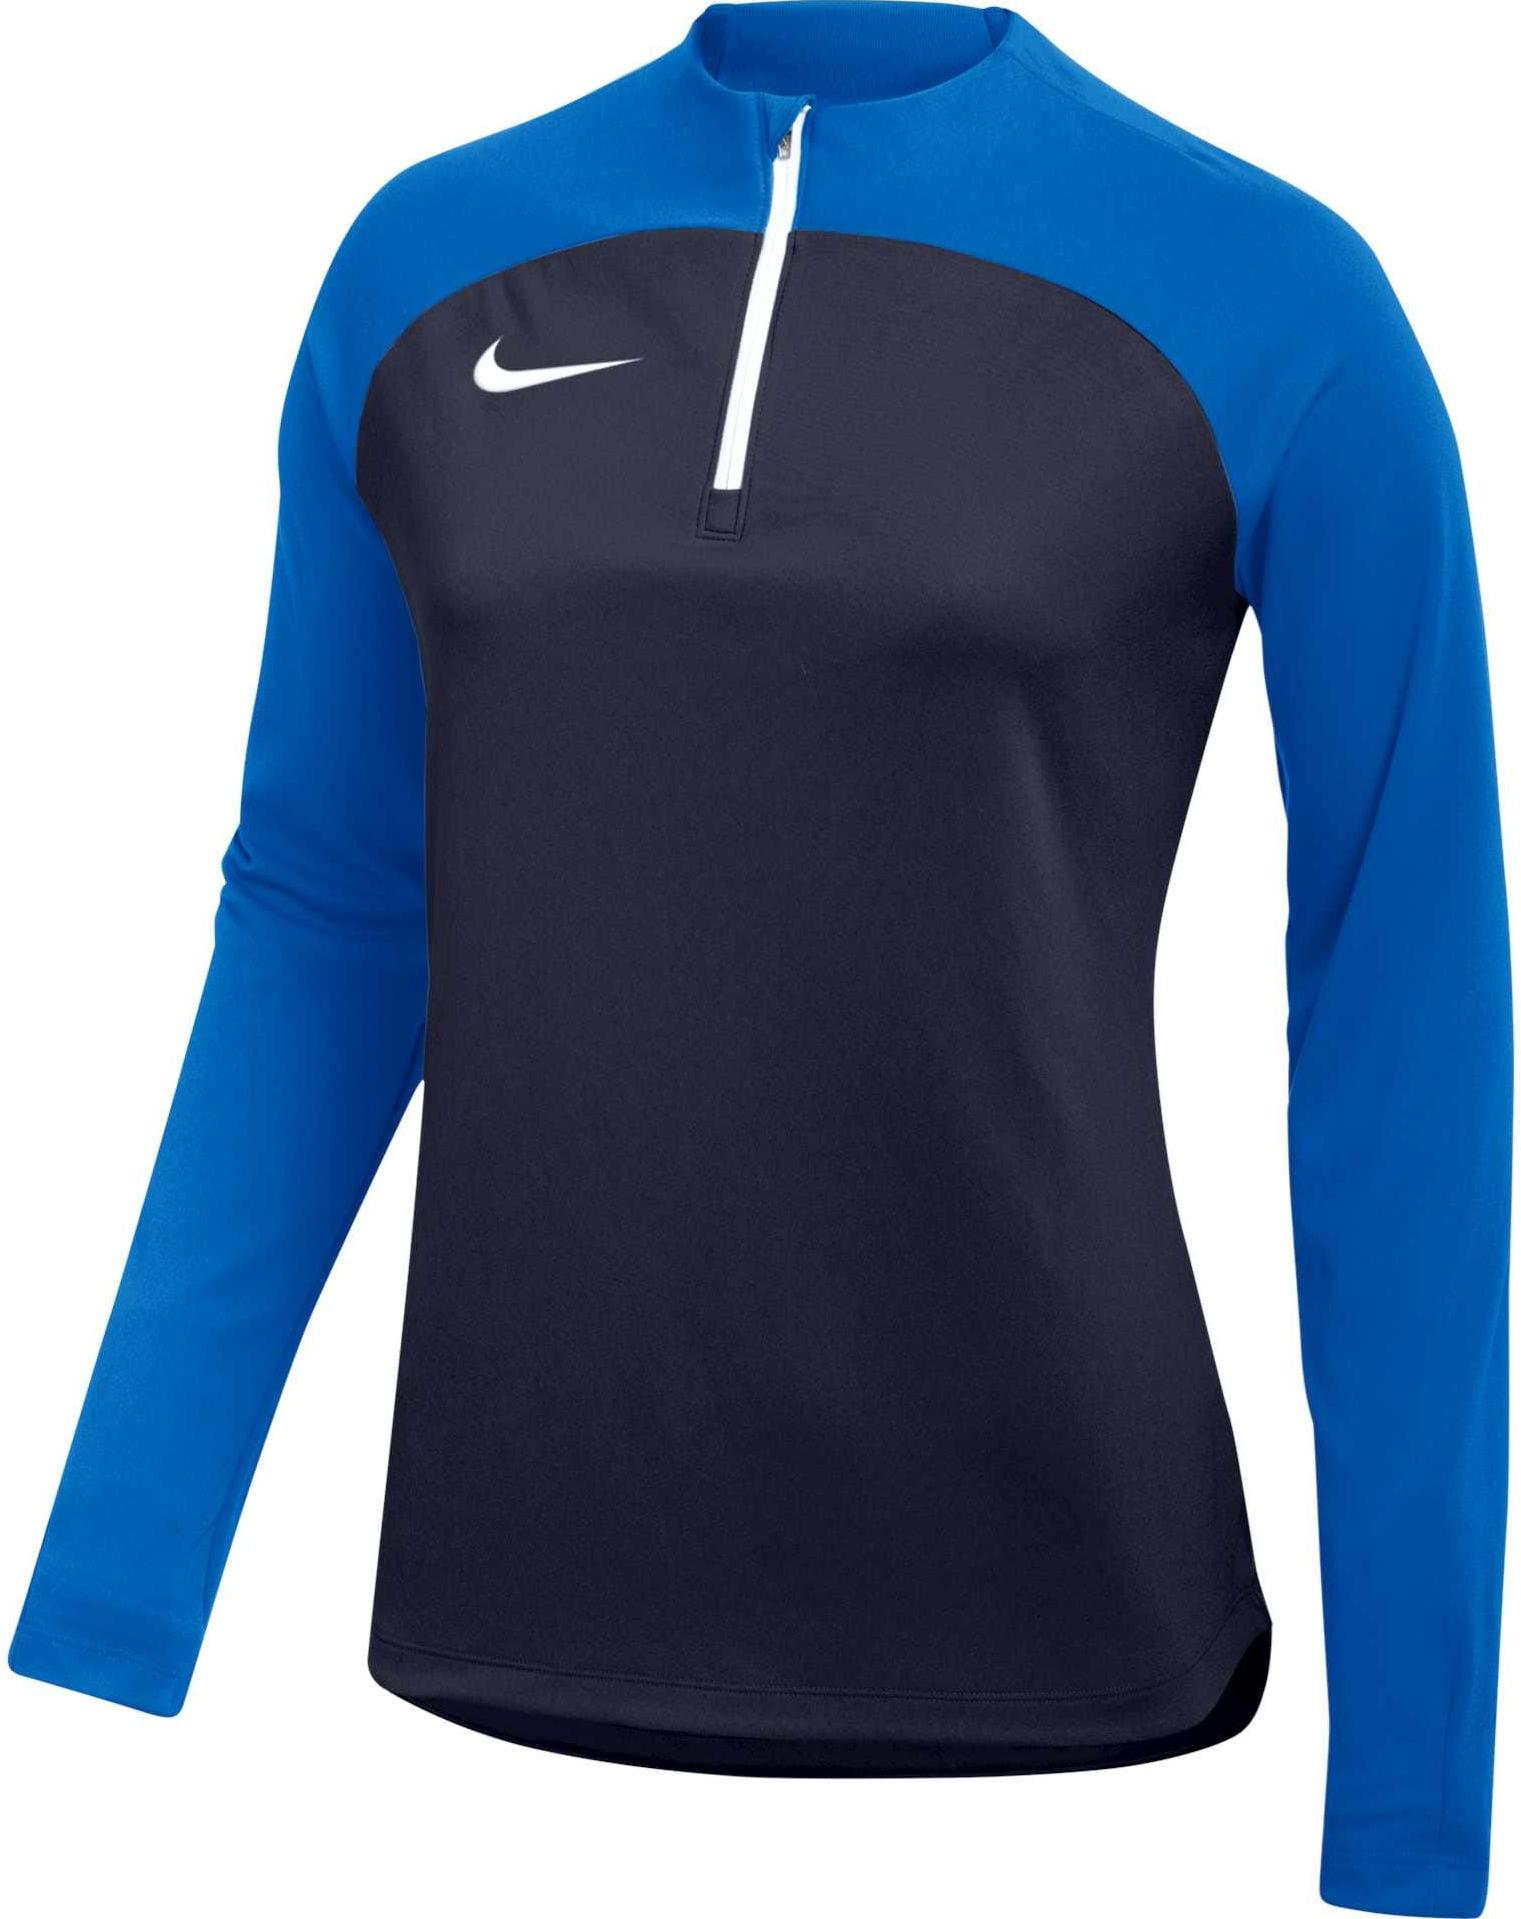 Dámské fotbalové tréninkové tričko s dlouhým rukávem Nike Academy Pro Drill